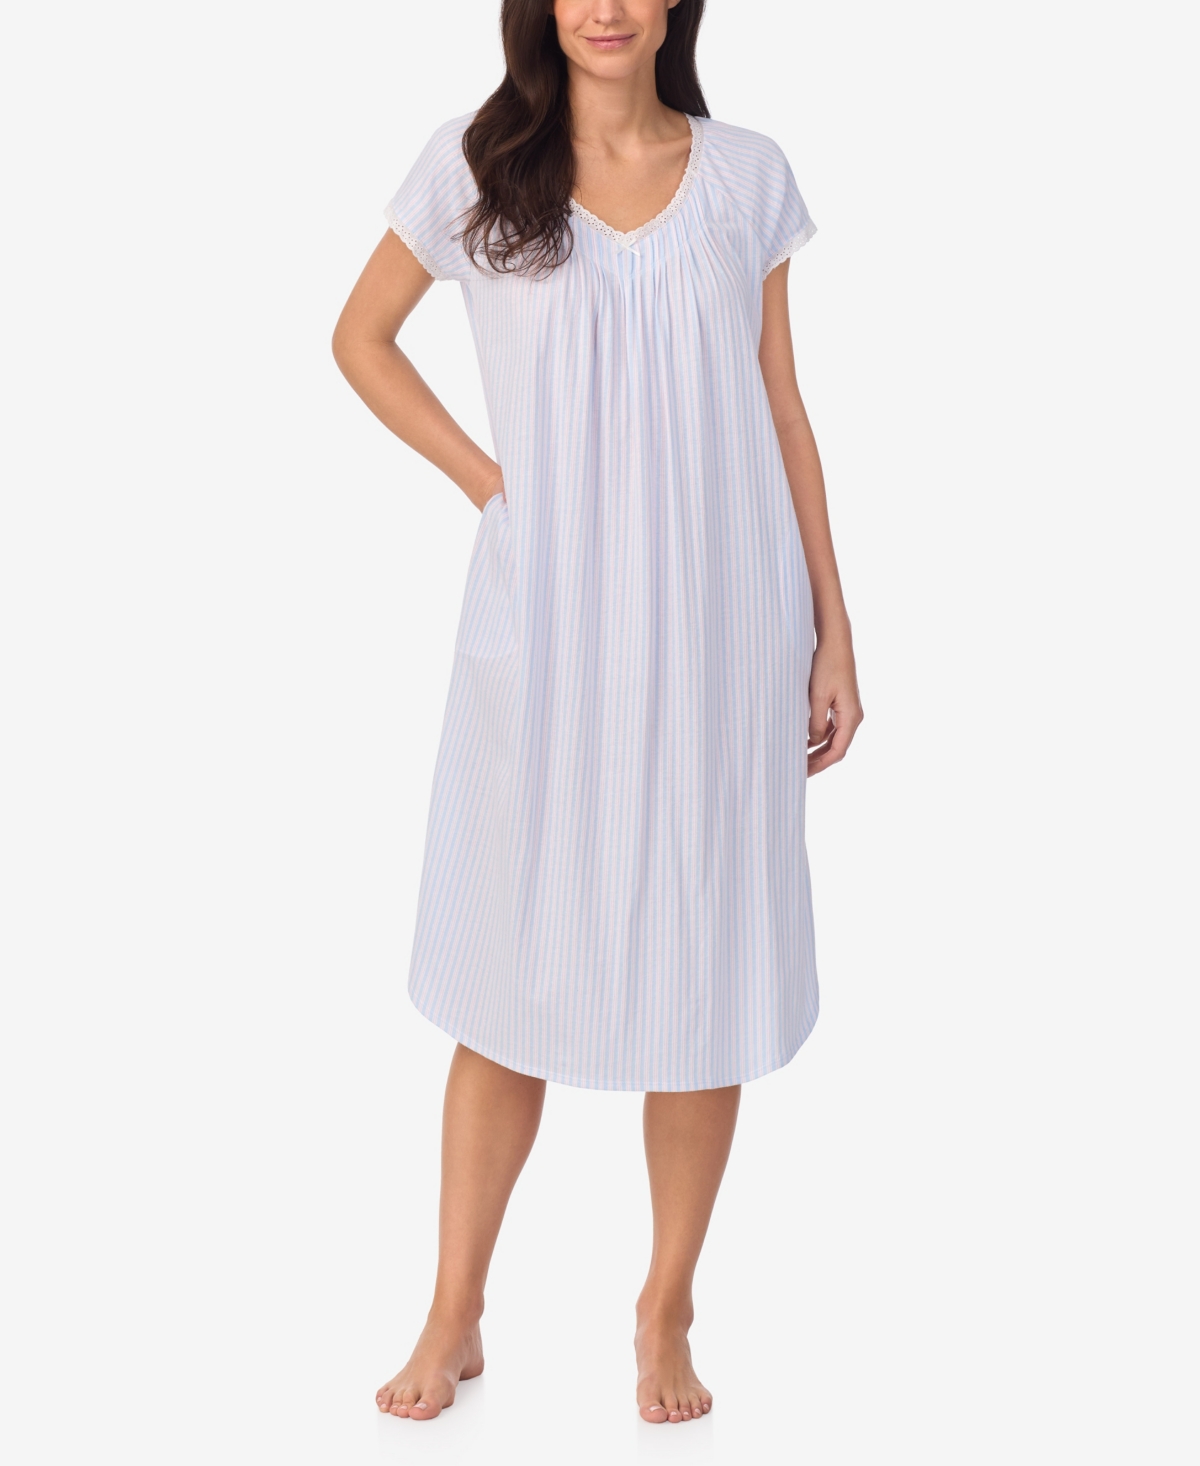 Women's Cap Sleeve Nightgown - Blue Stripe